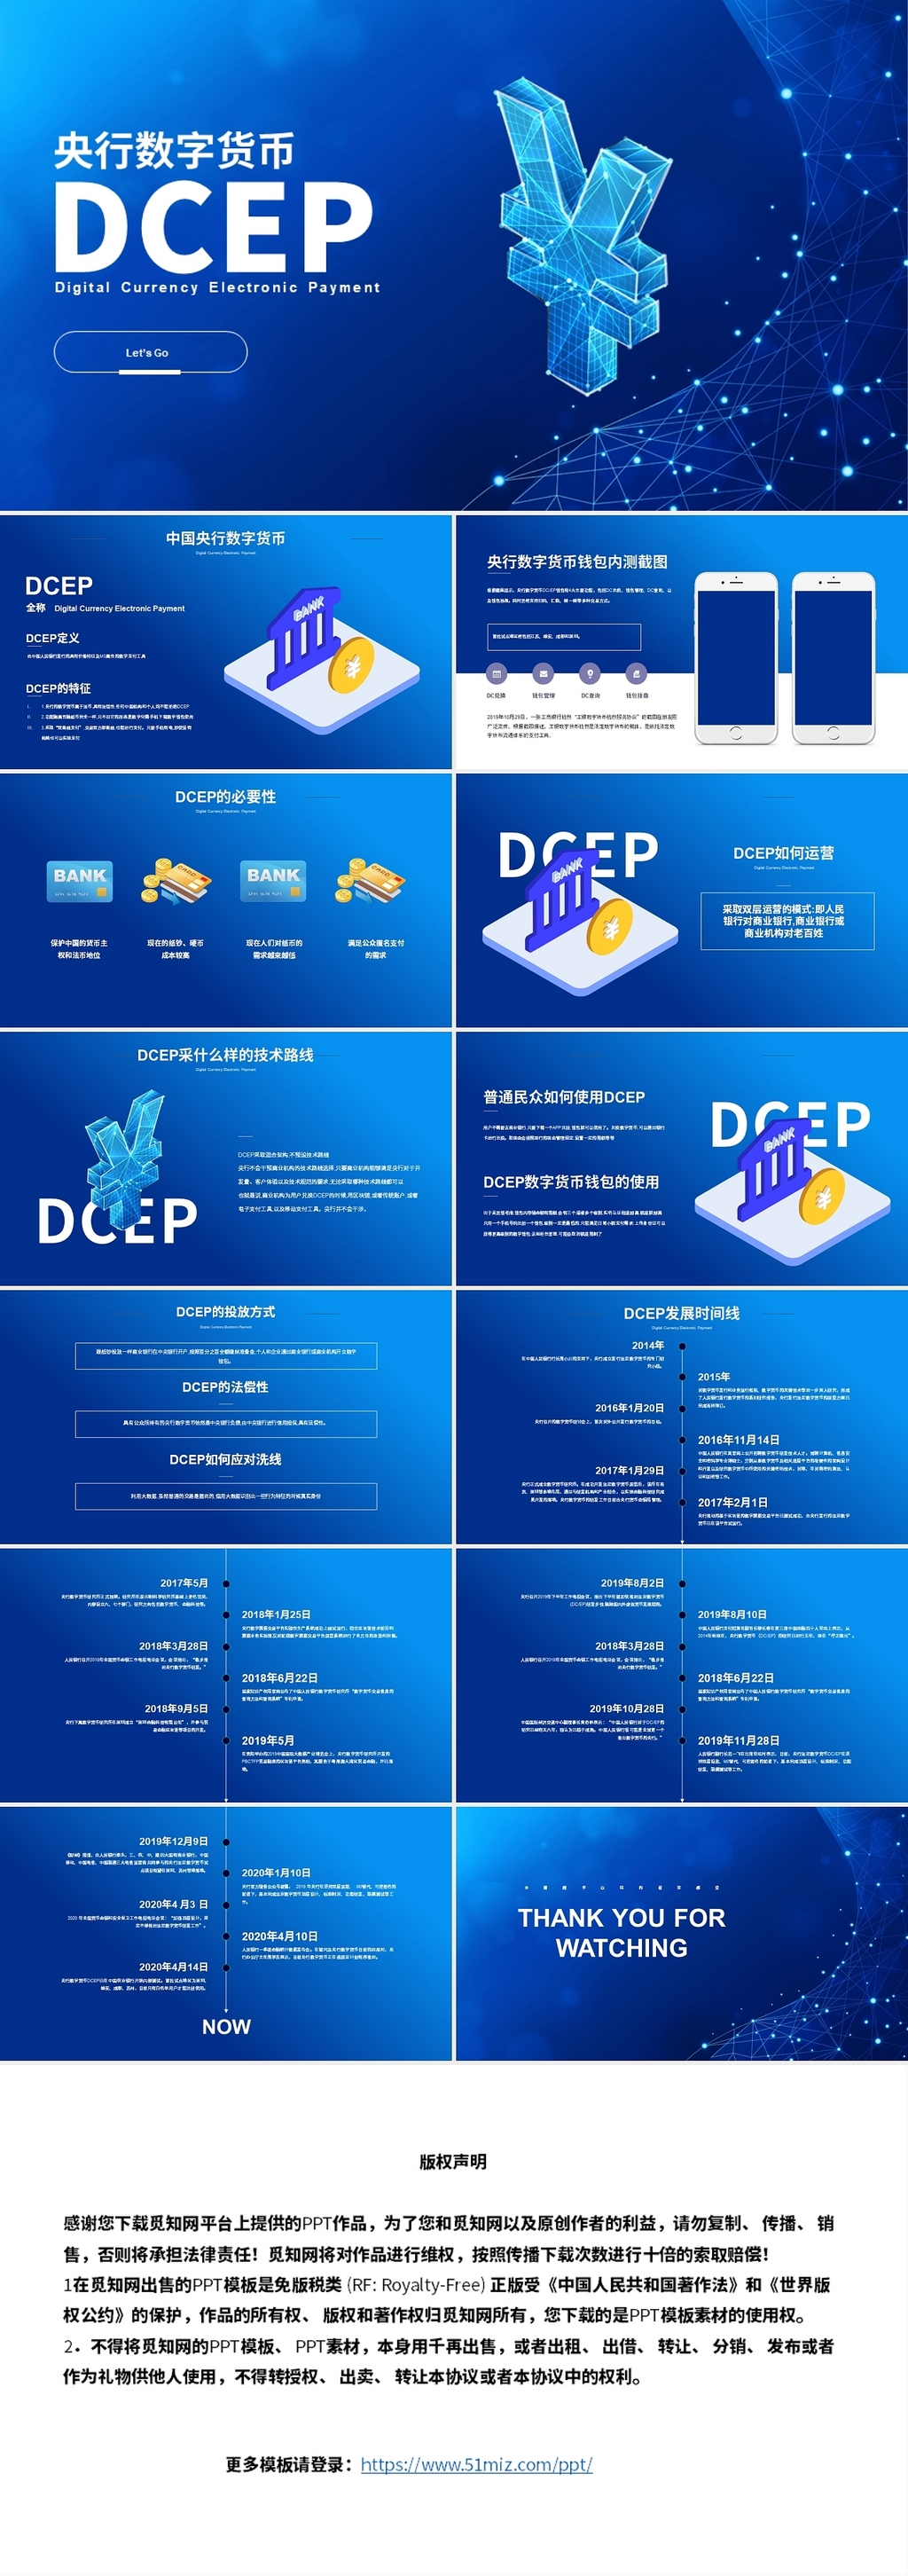 蓝色科技风格央行数字货币产品介绍ppt模板央行数字货币DCEP